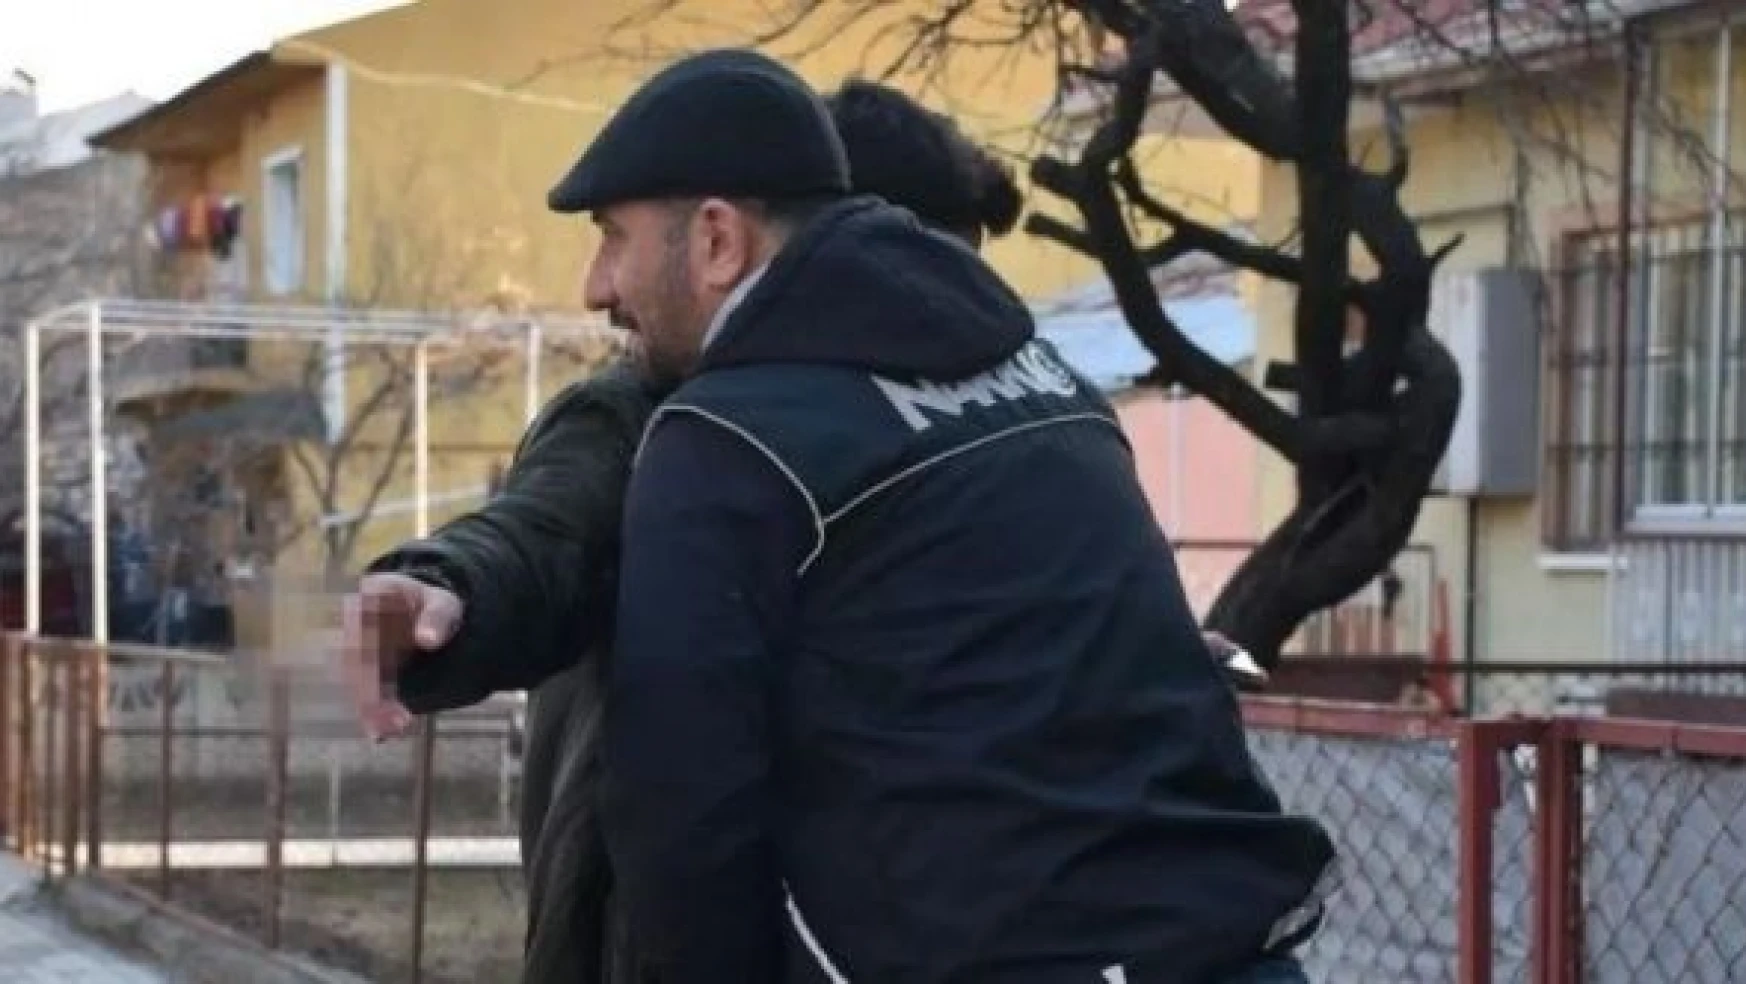 Erzincan'da çeşitli suçlardan 12 kişi gözaltına alındı